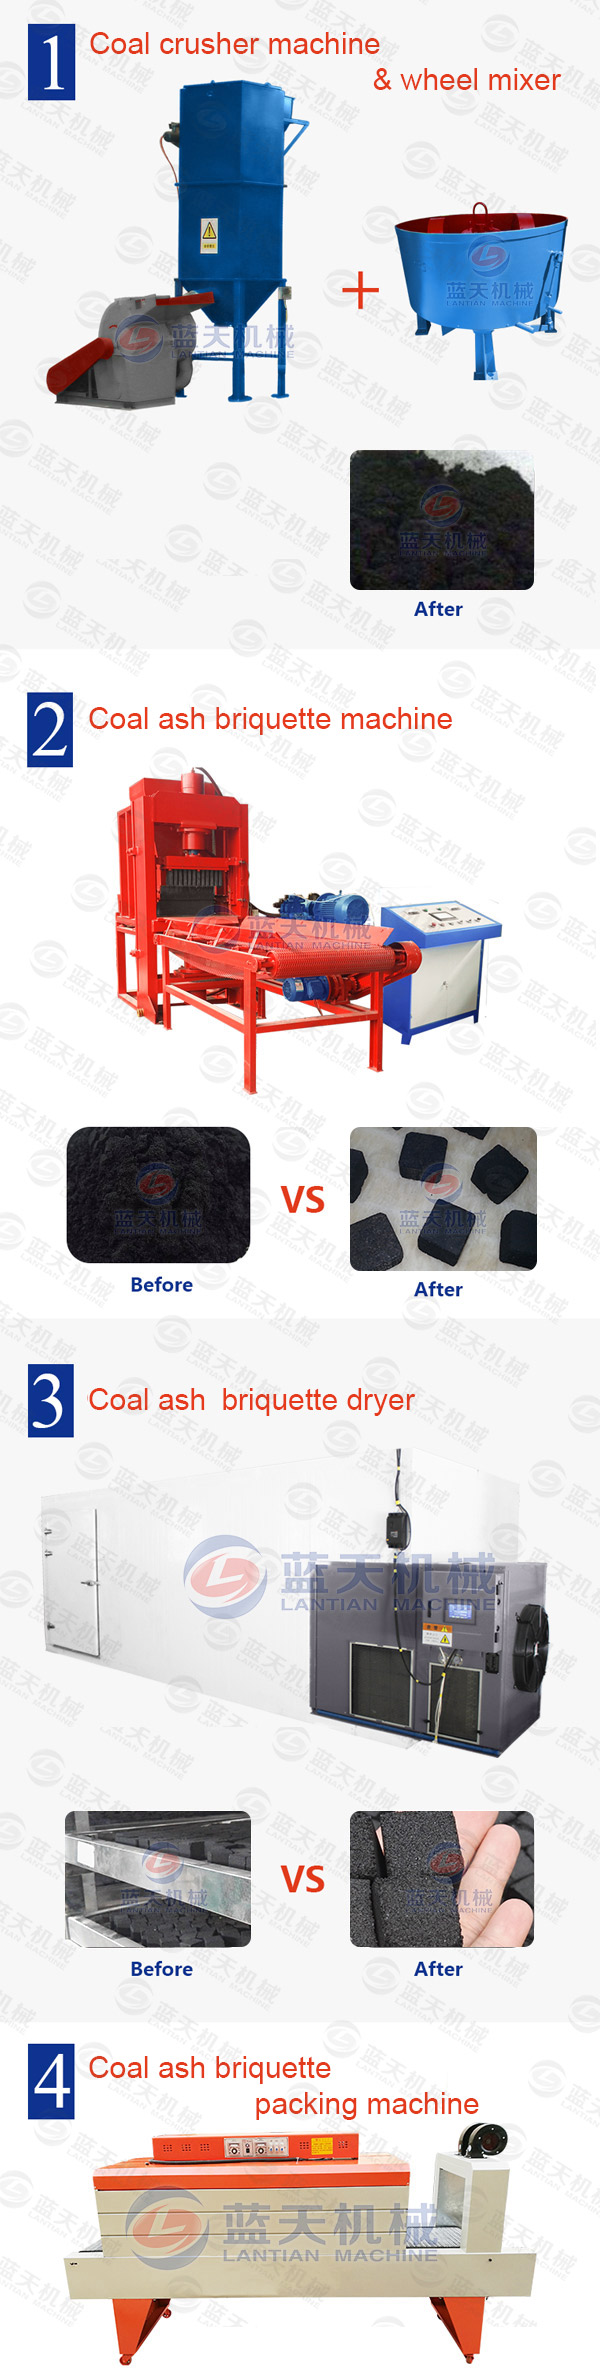 Product line of coal ash briquette machine